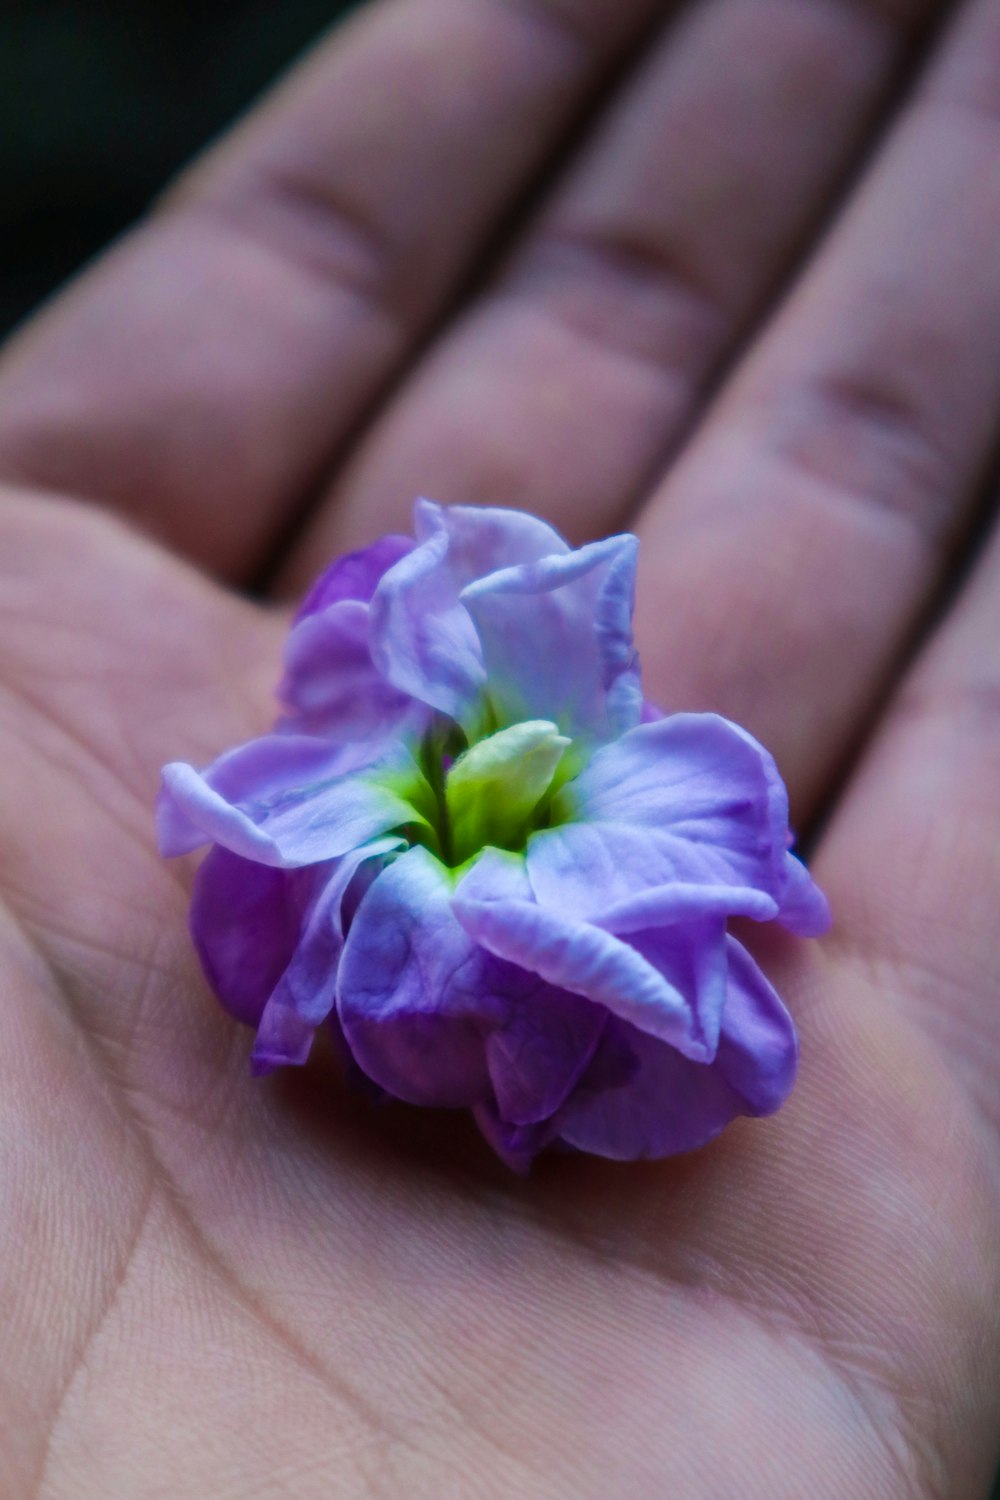 une petite fleur violette posée sur la paume de la main d’une personne